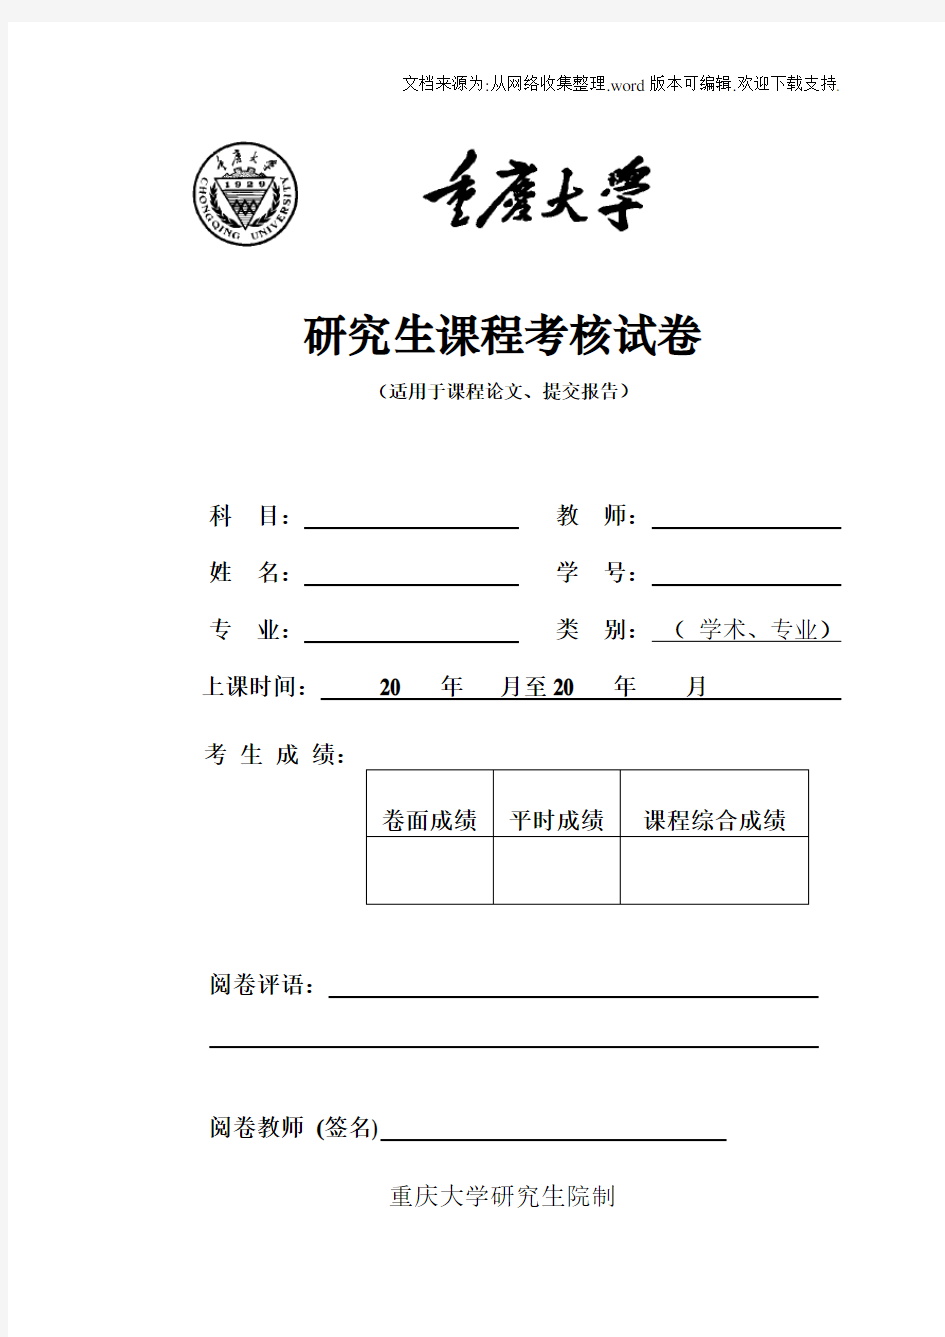 重庆大学研究生课程考核、实验、博士综合考试格式与封面